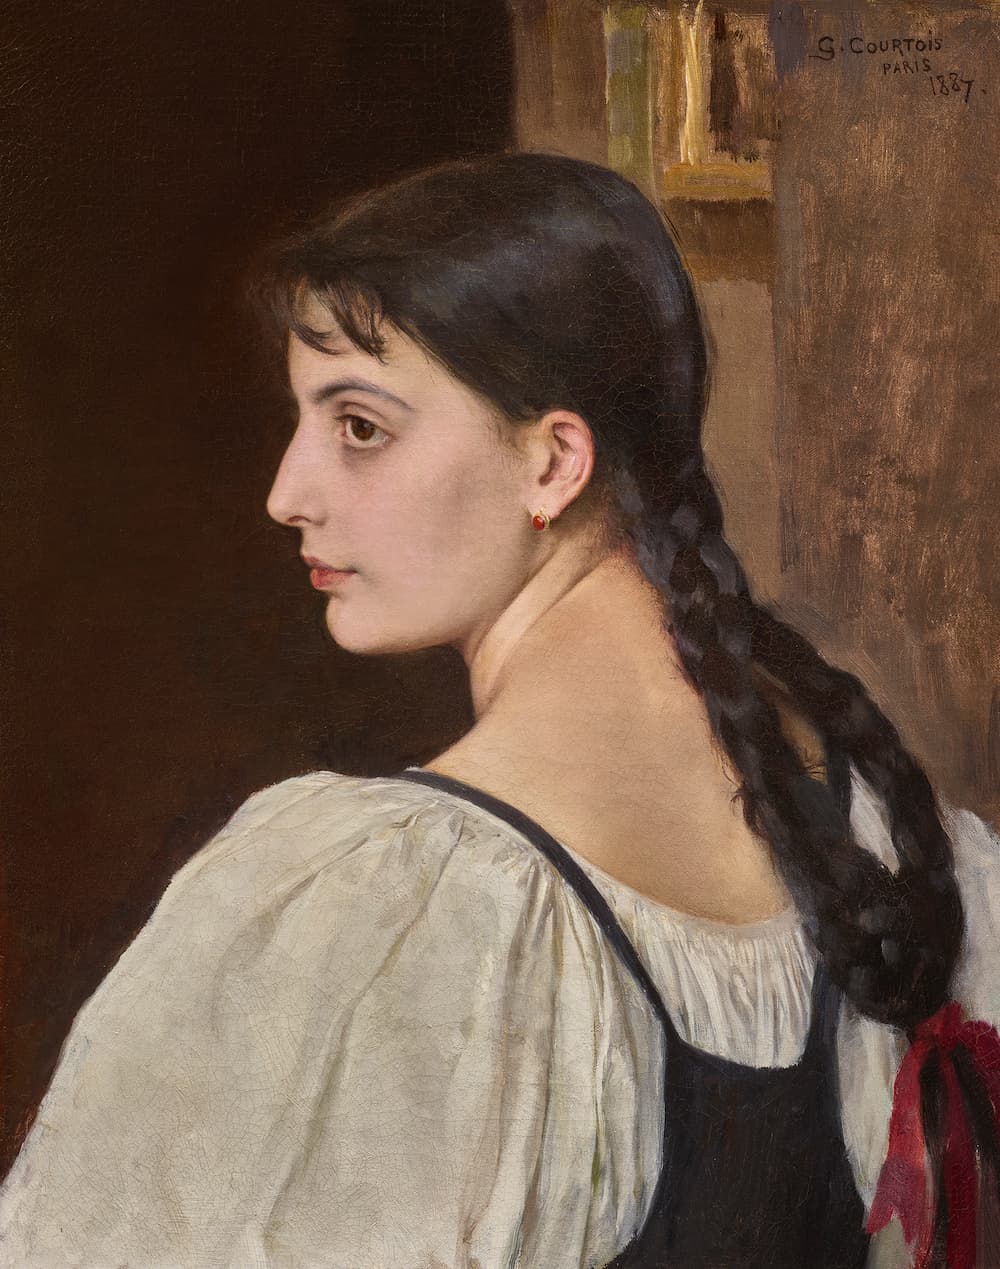 Gustave Courtois, Jeune femme de profil, Huile sur toile, Signé : G. Courtois, Paris, 1887